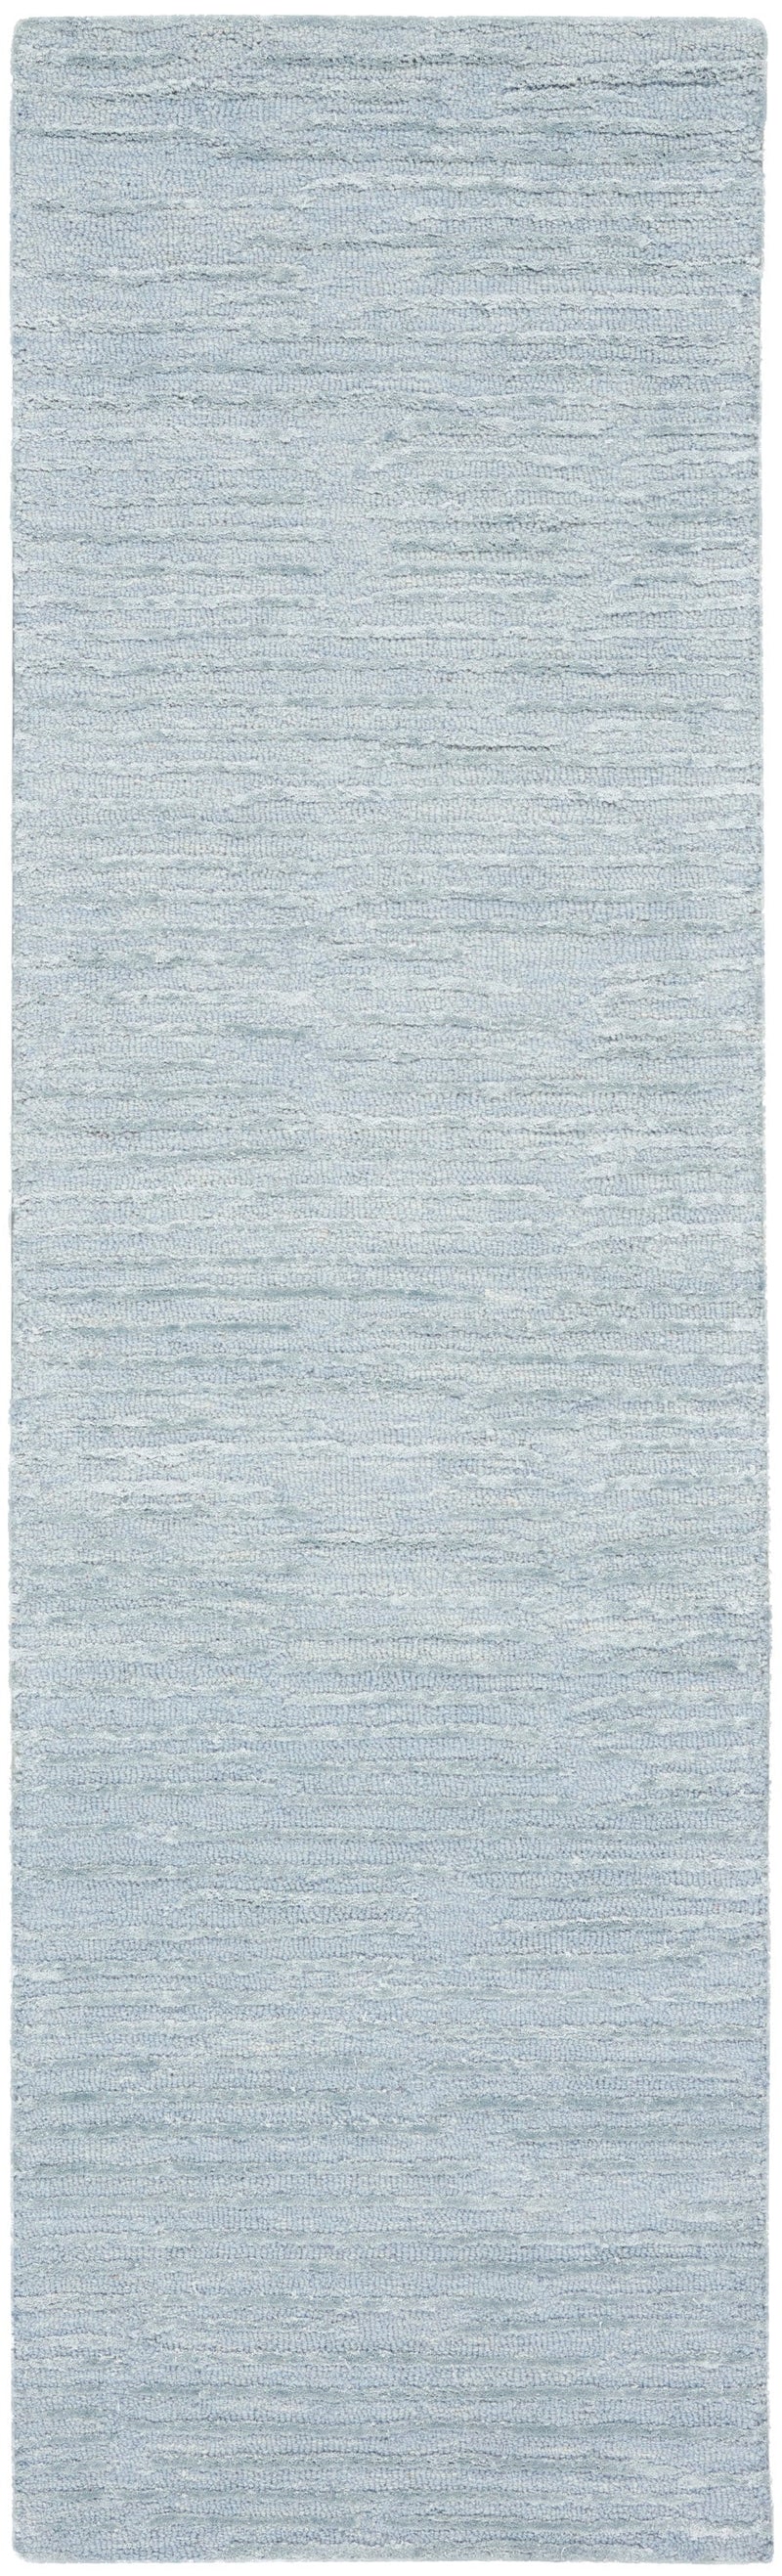 media image for ck010 linear handmade light blue rug by nourison 99446879950 redo 2 237